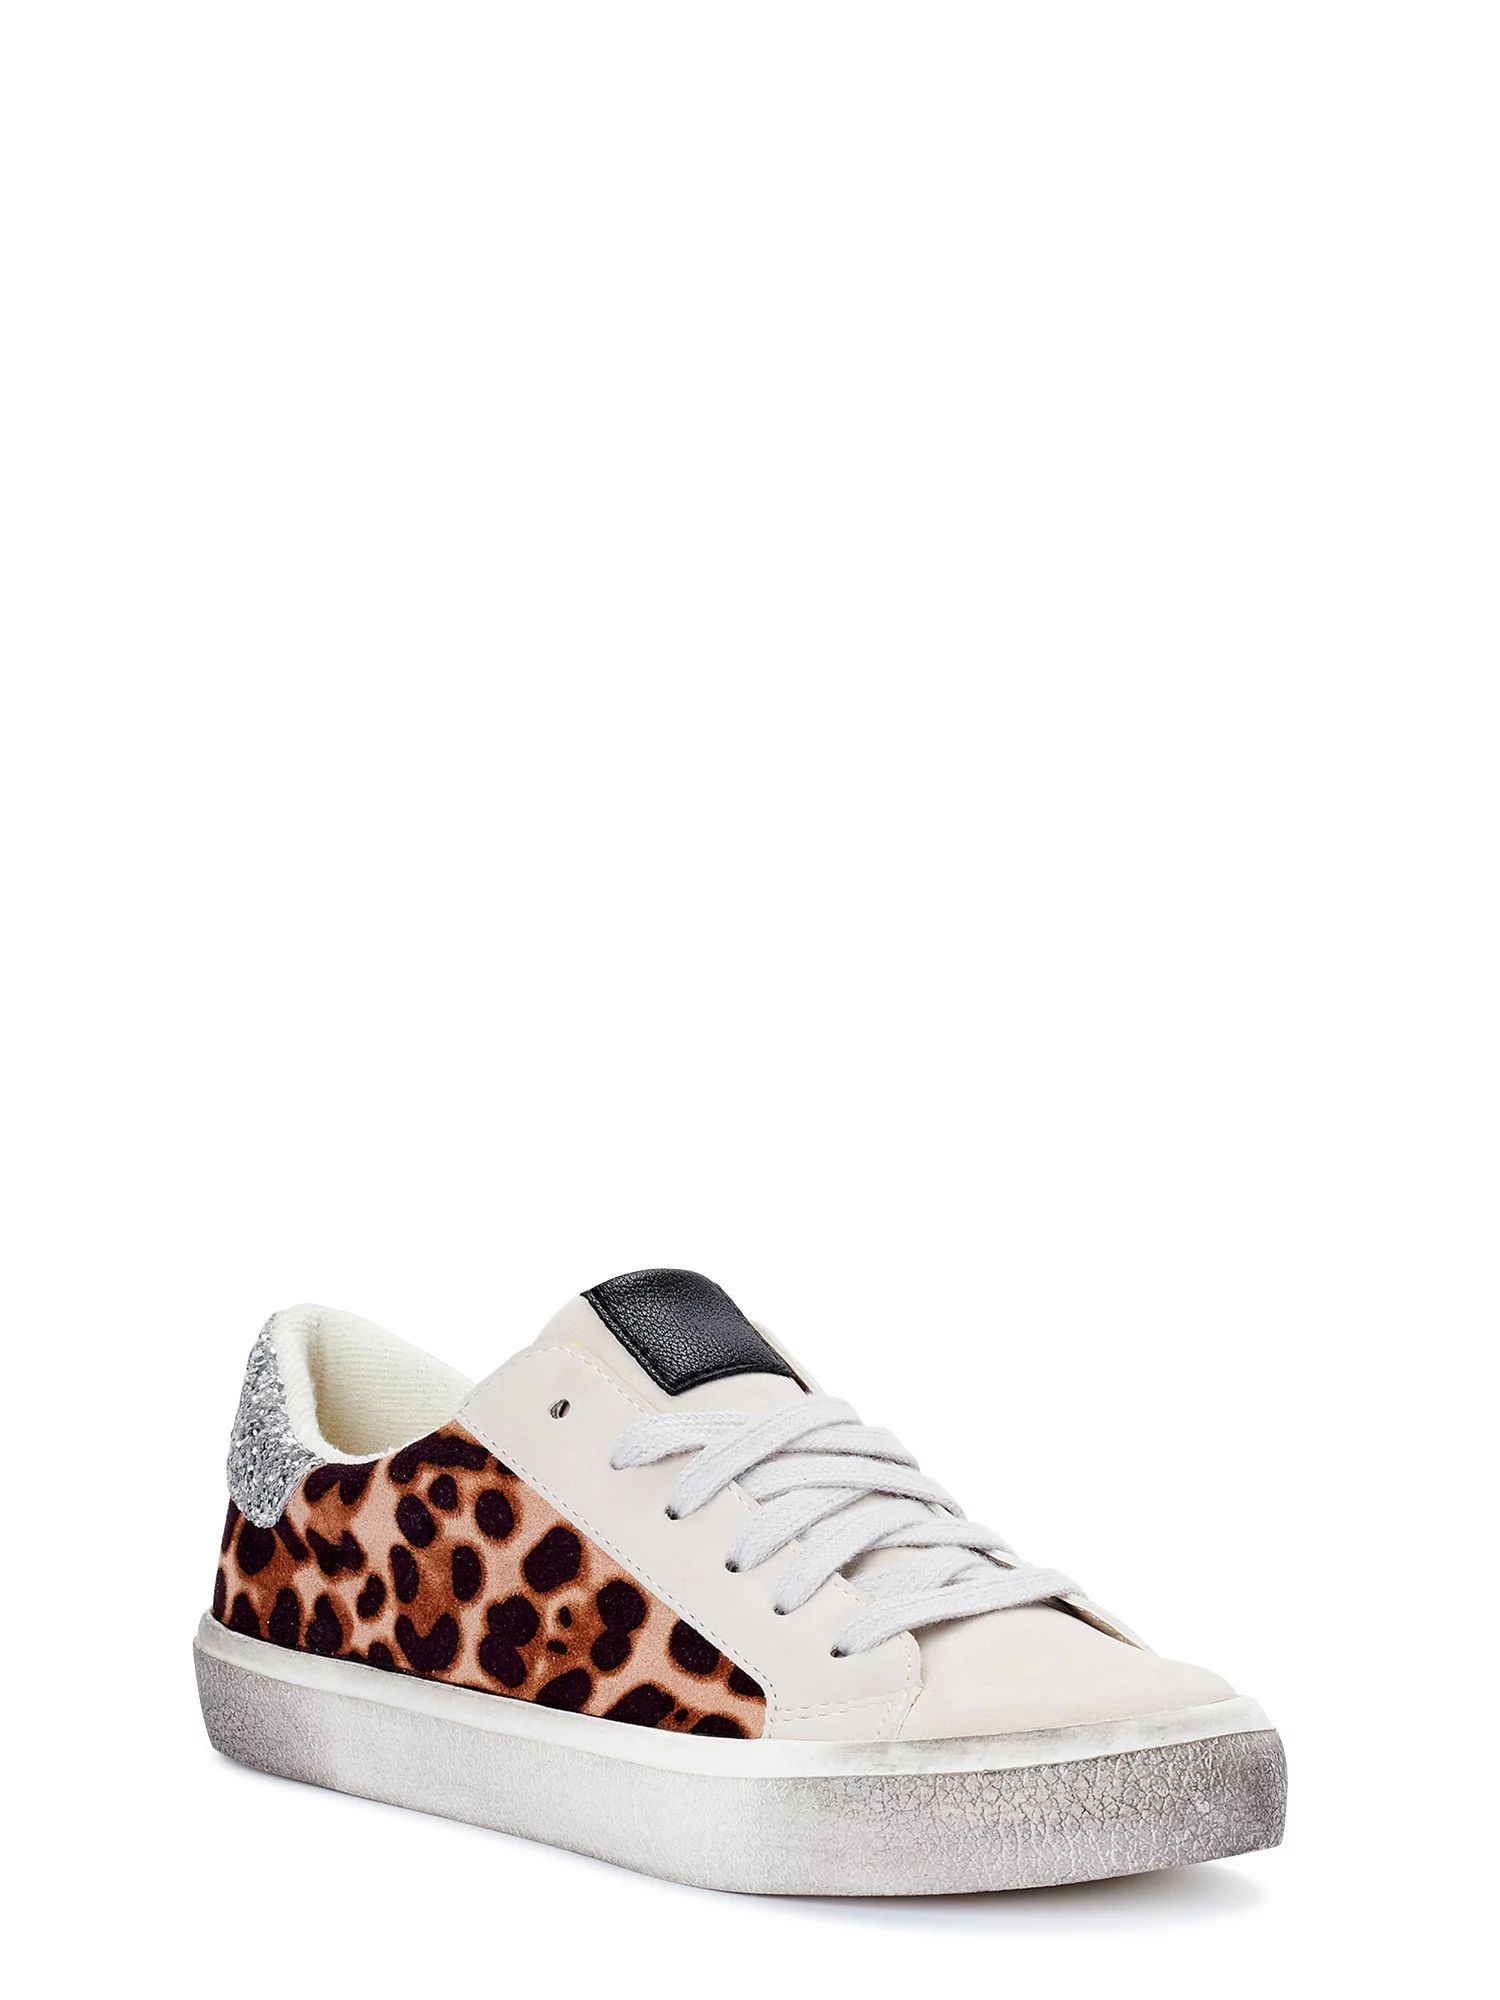 Scoop - Scoop Women's Distressed Leopard Print Sneaker - Walmart.com | Walmart (US)